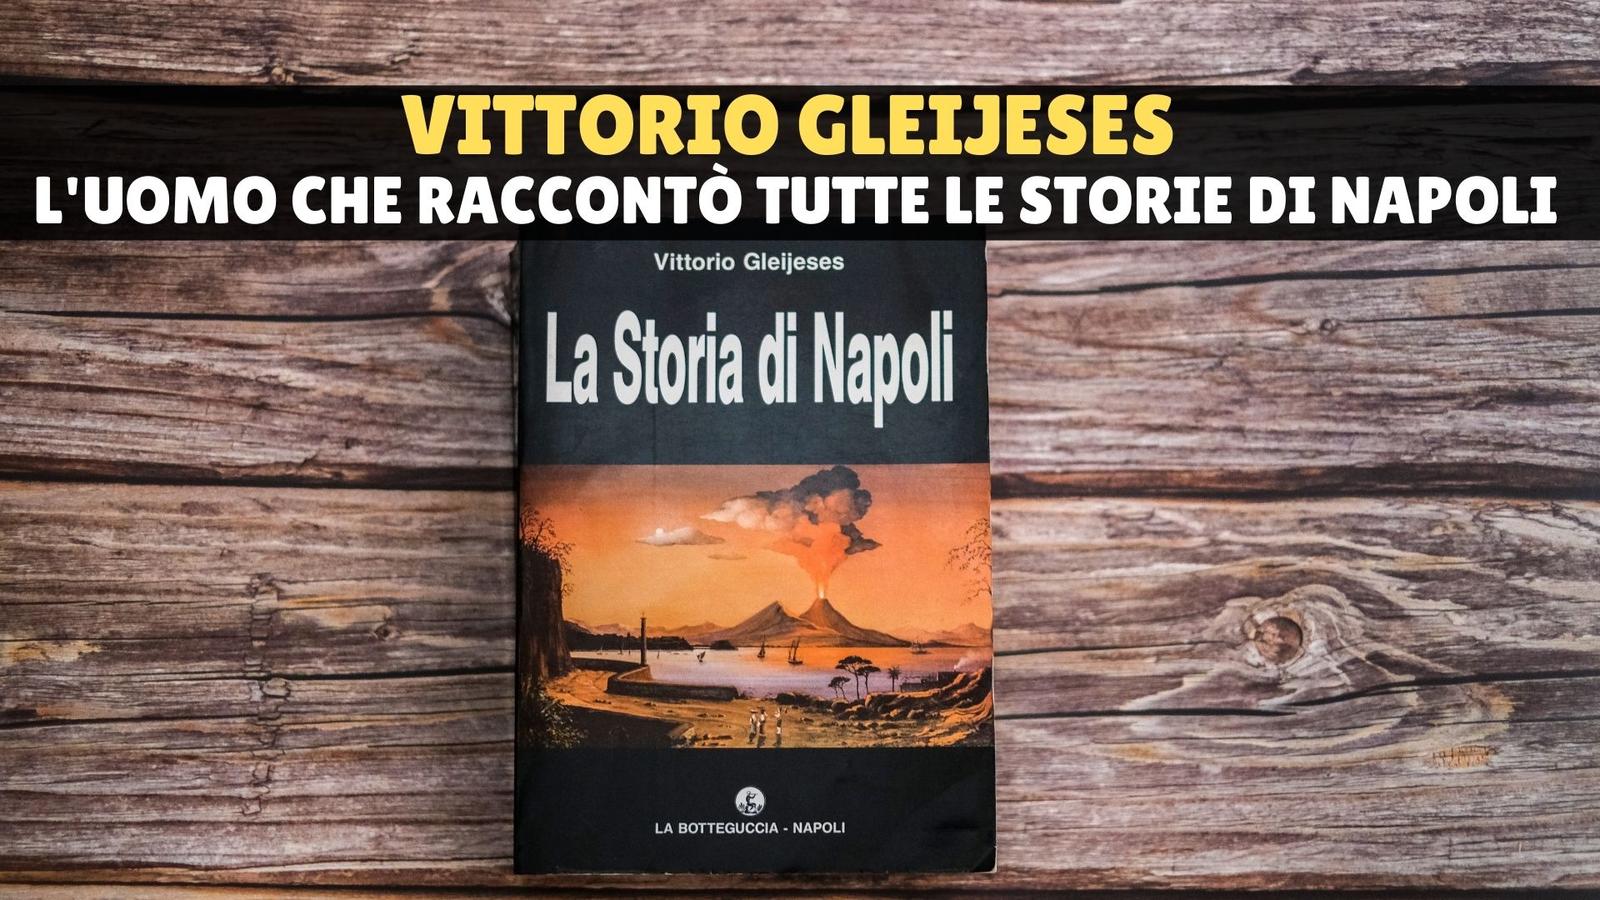 Vittorio Gleijeses, il colonnello che ha raccontato tutte le storie di Napoli